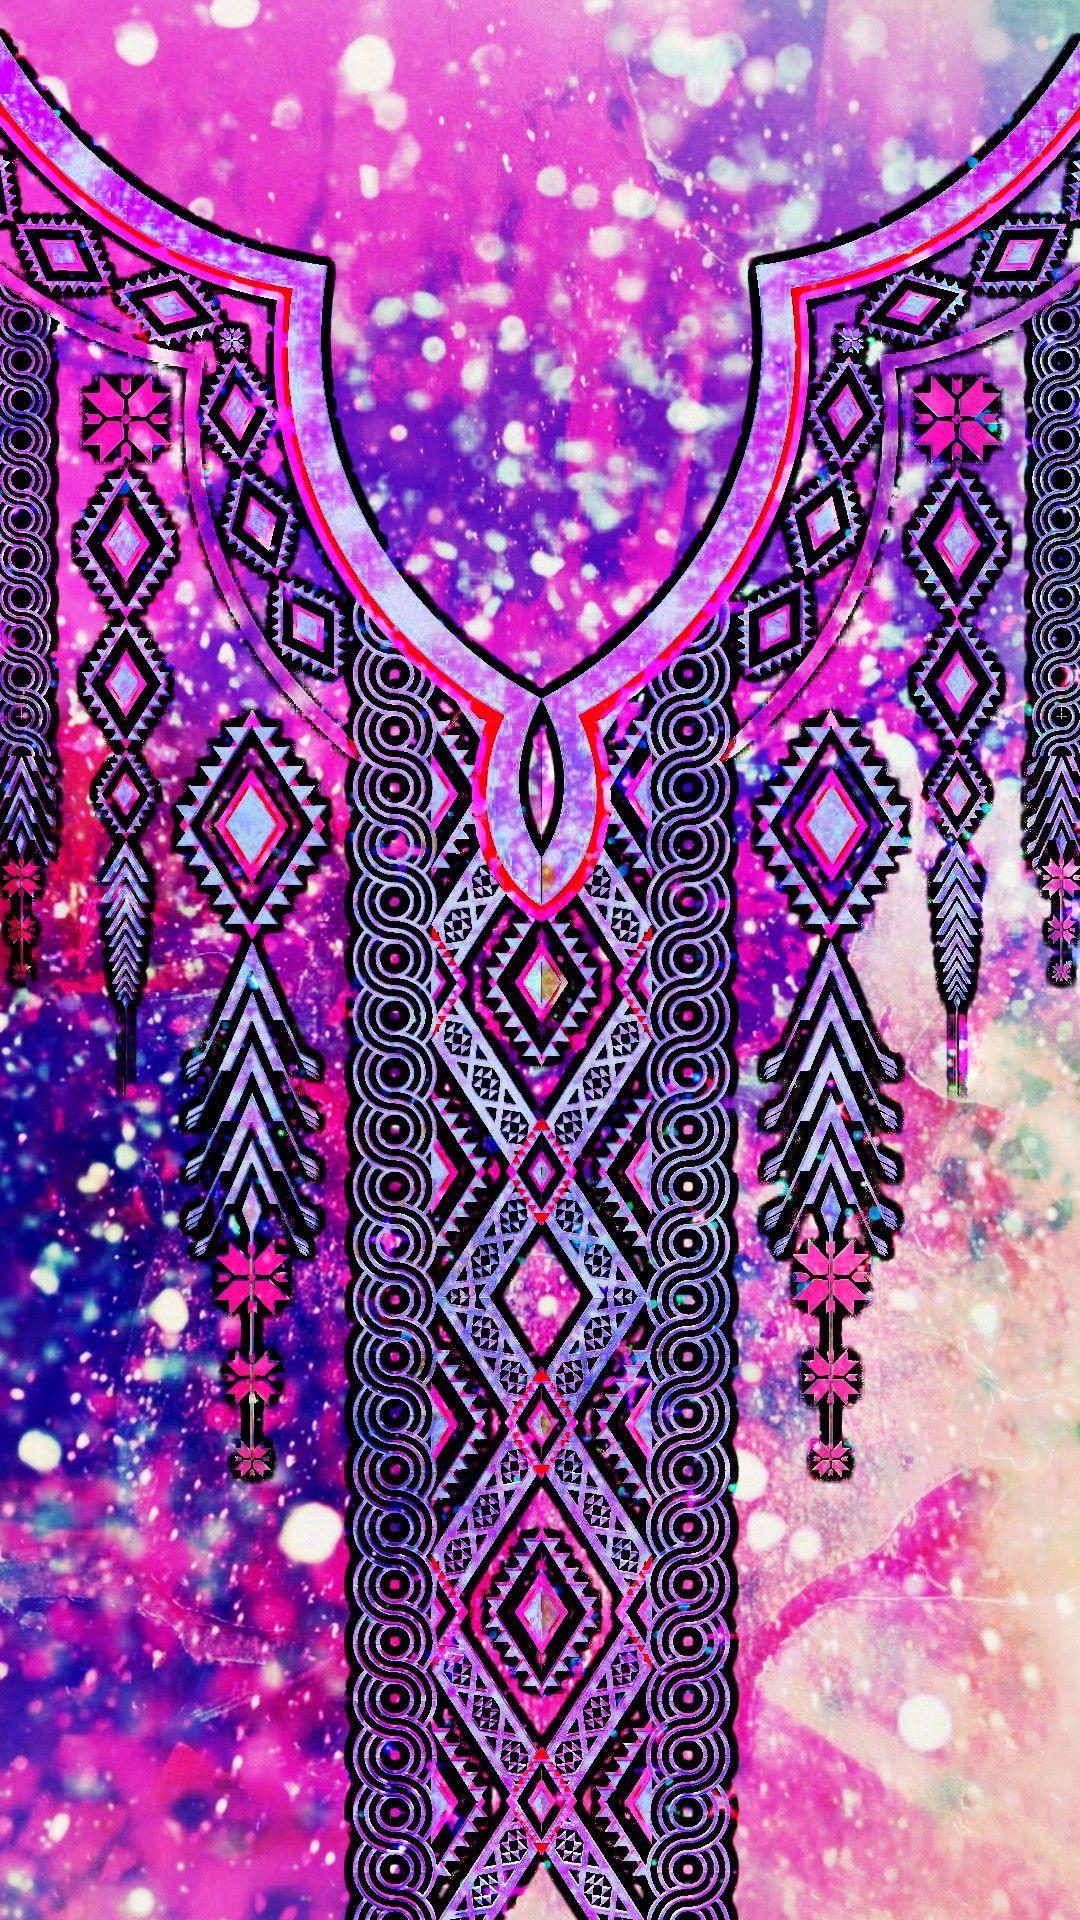 Boho Pattern Galaxy, made by me #purple #blue #glitter